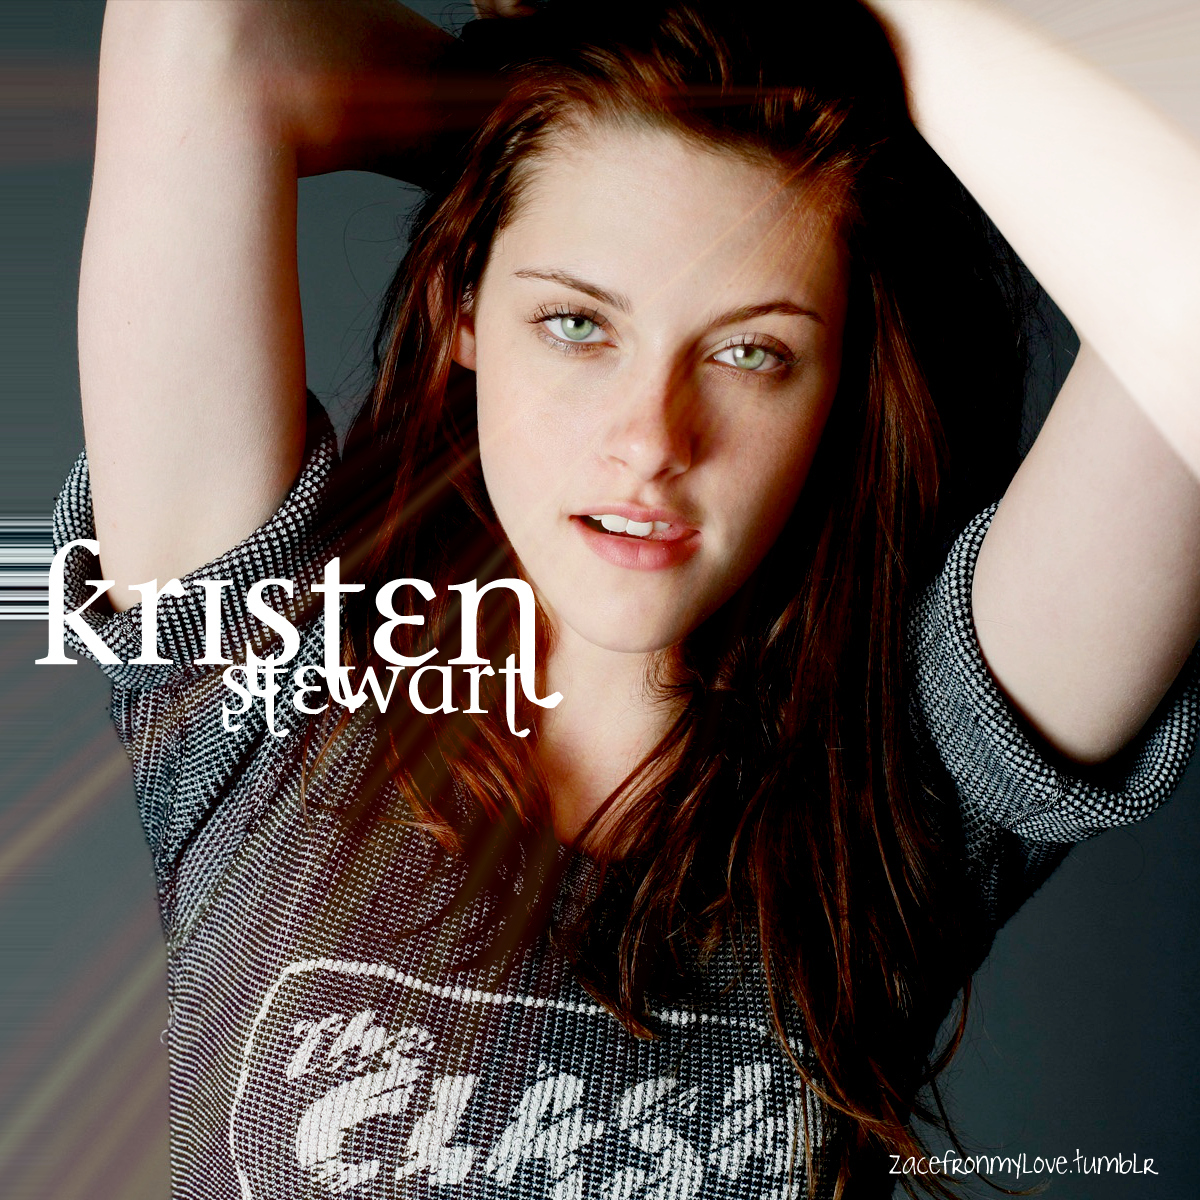 Kristen Stewart - Kristen Stewart Fan Art (26365009) - Fanpop